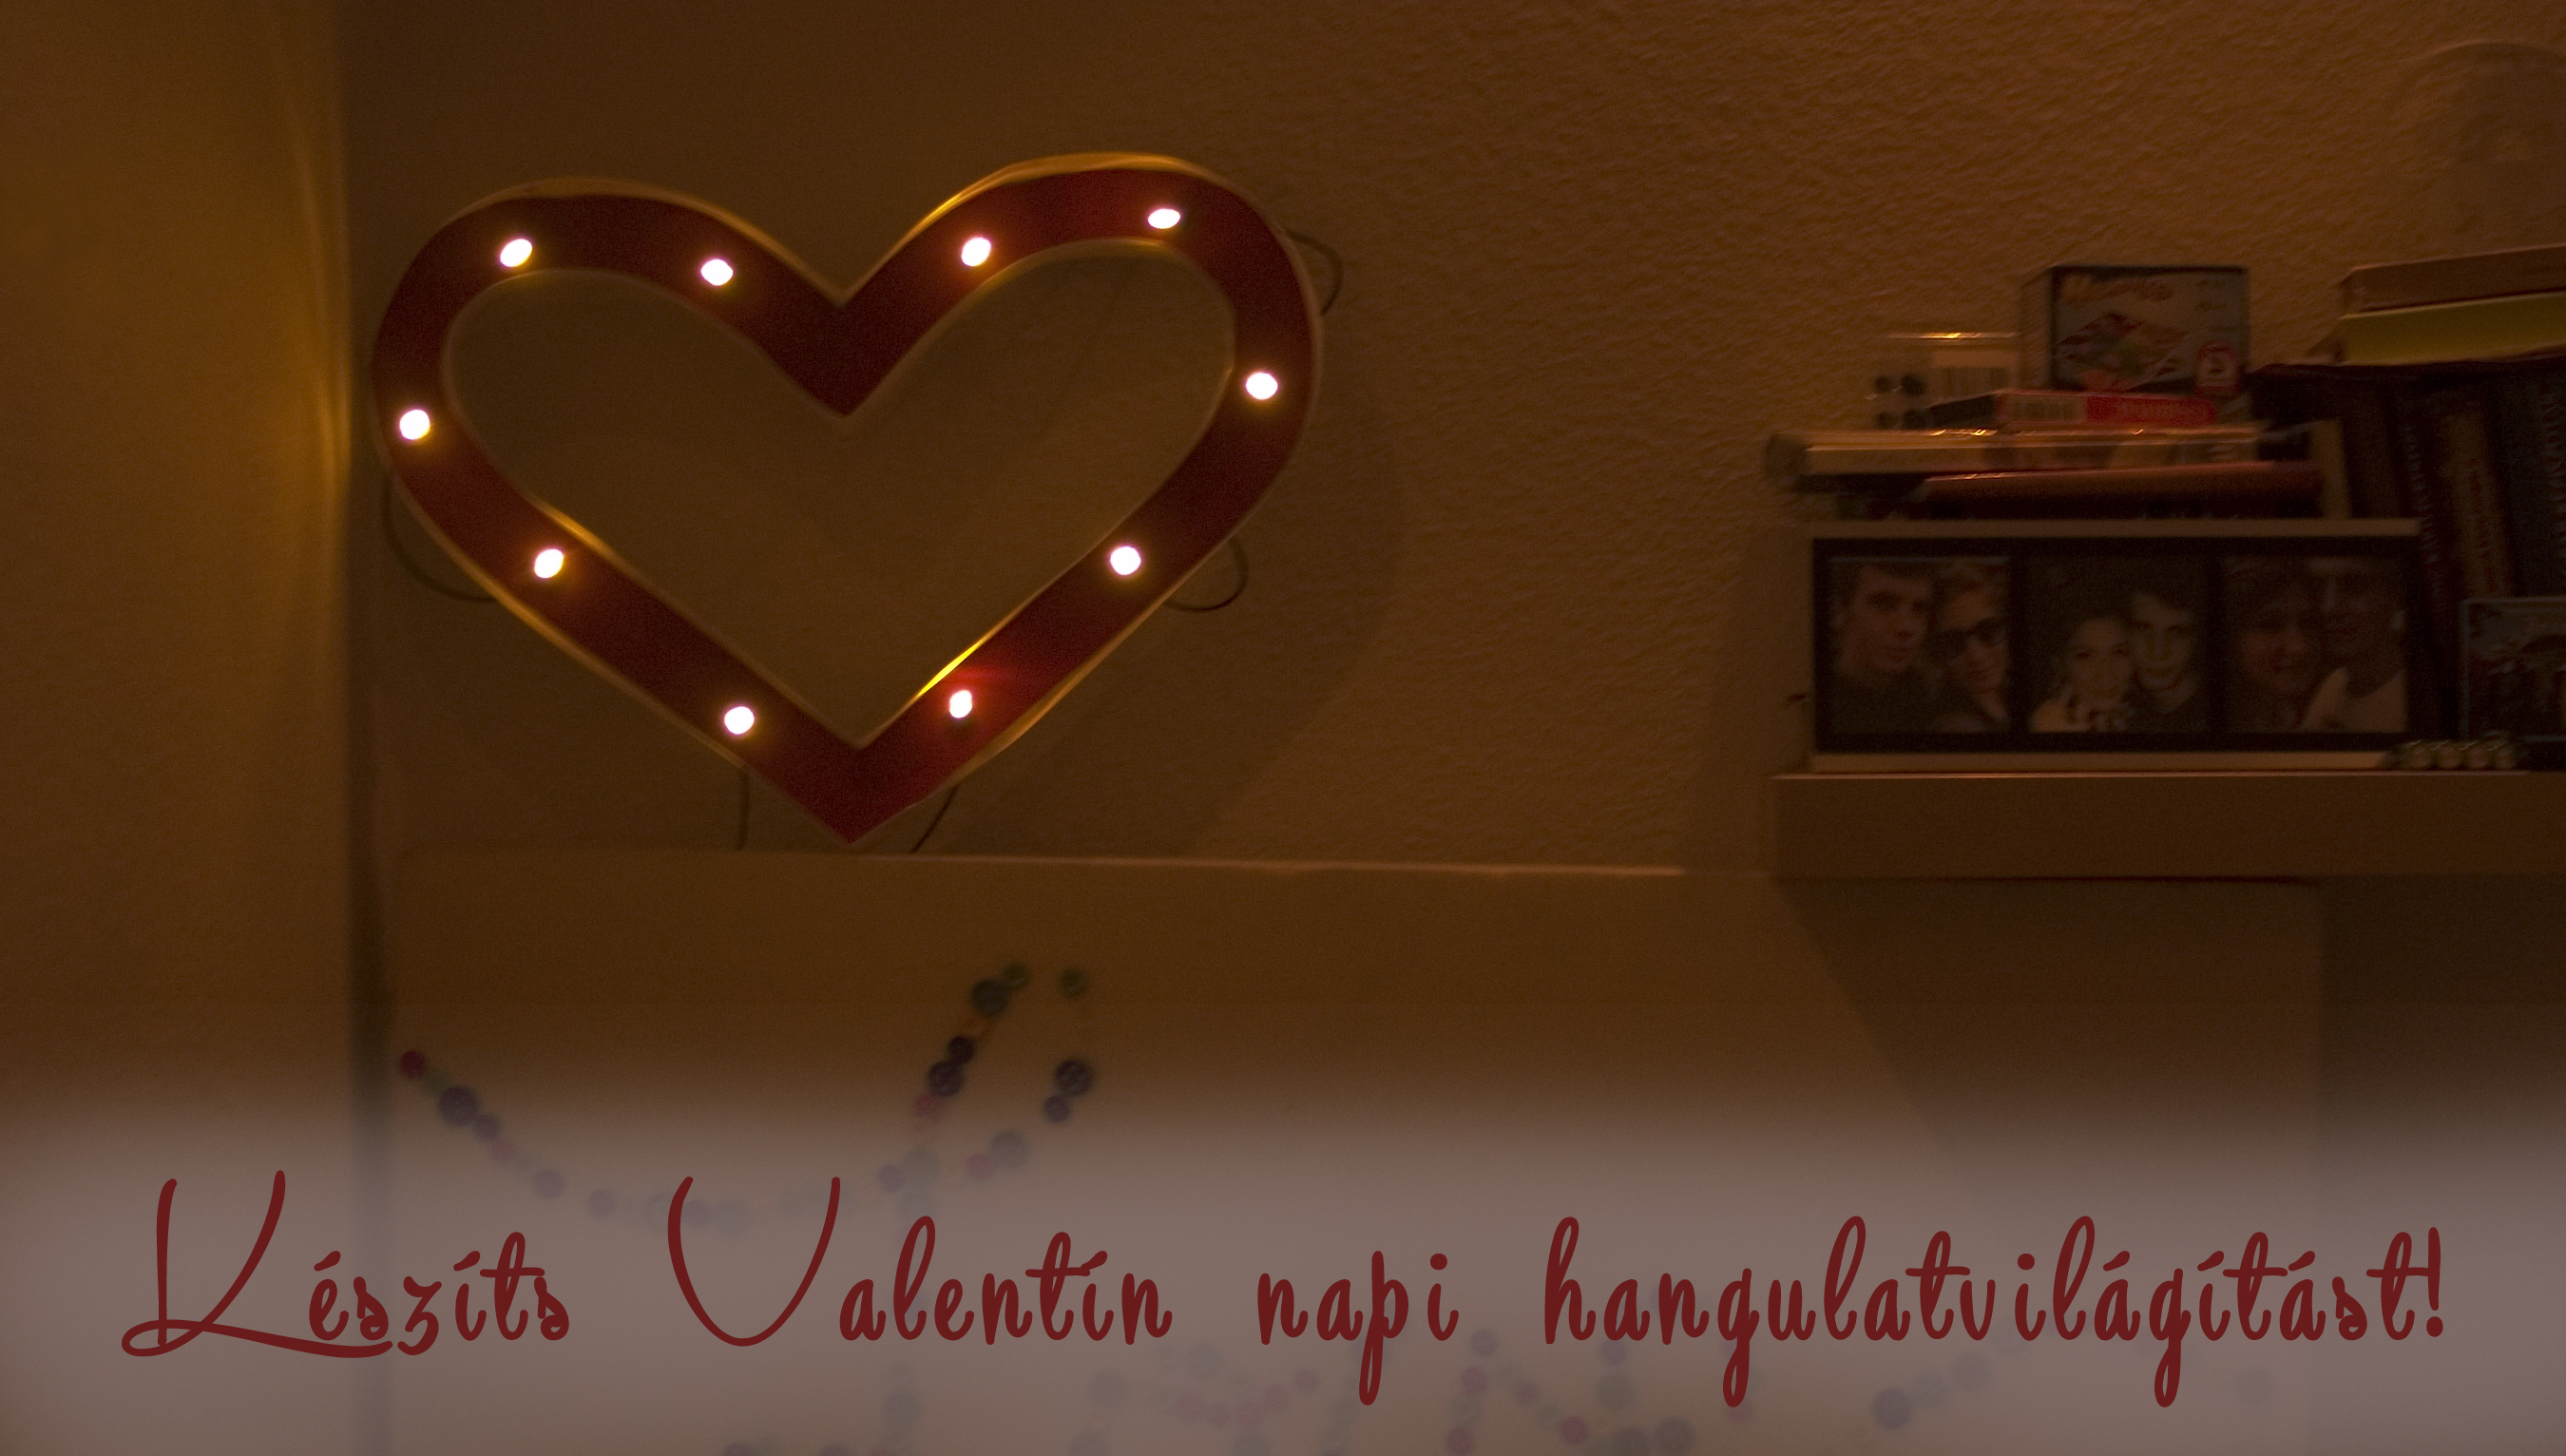 DIY valentin csináld magad led kreatív dekoráció